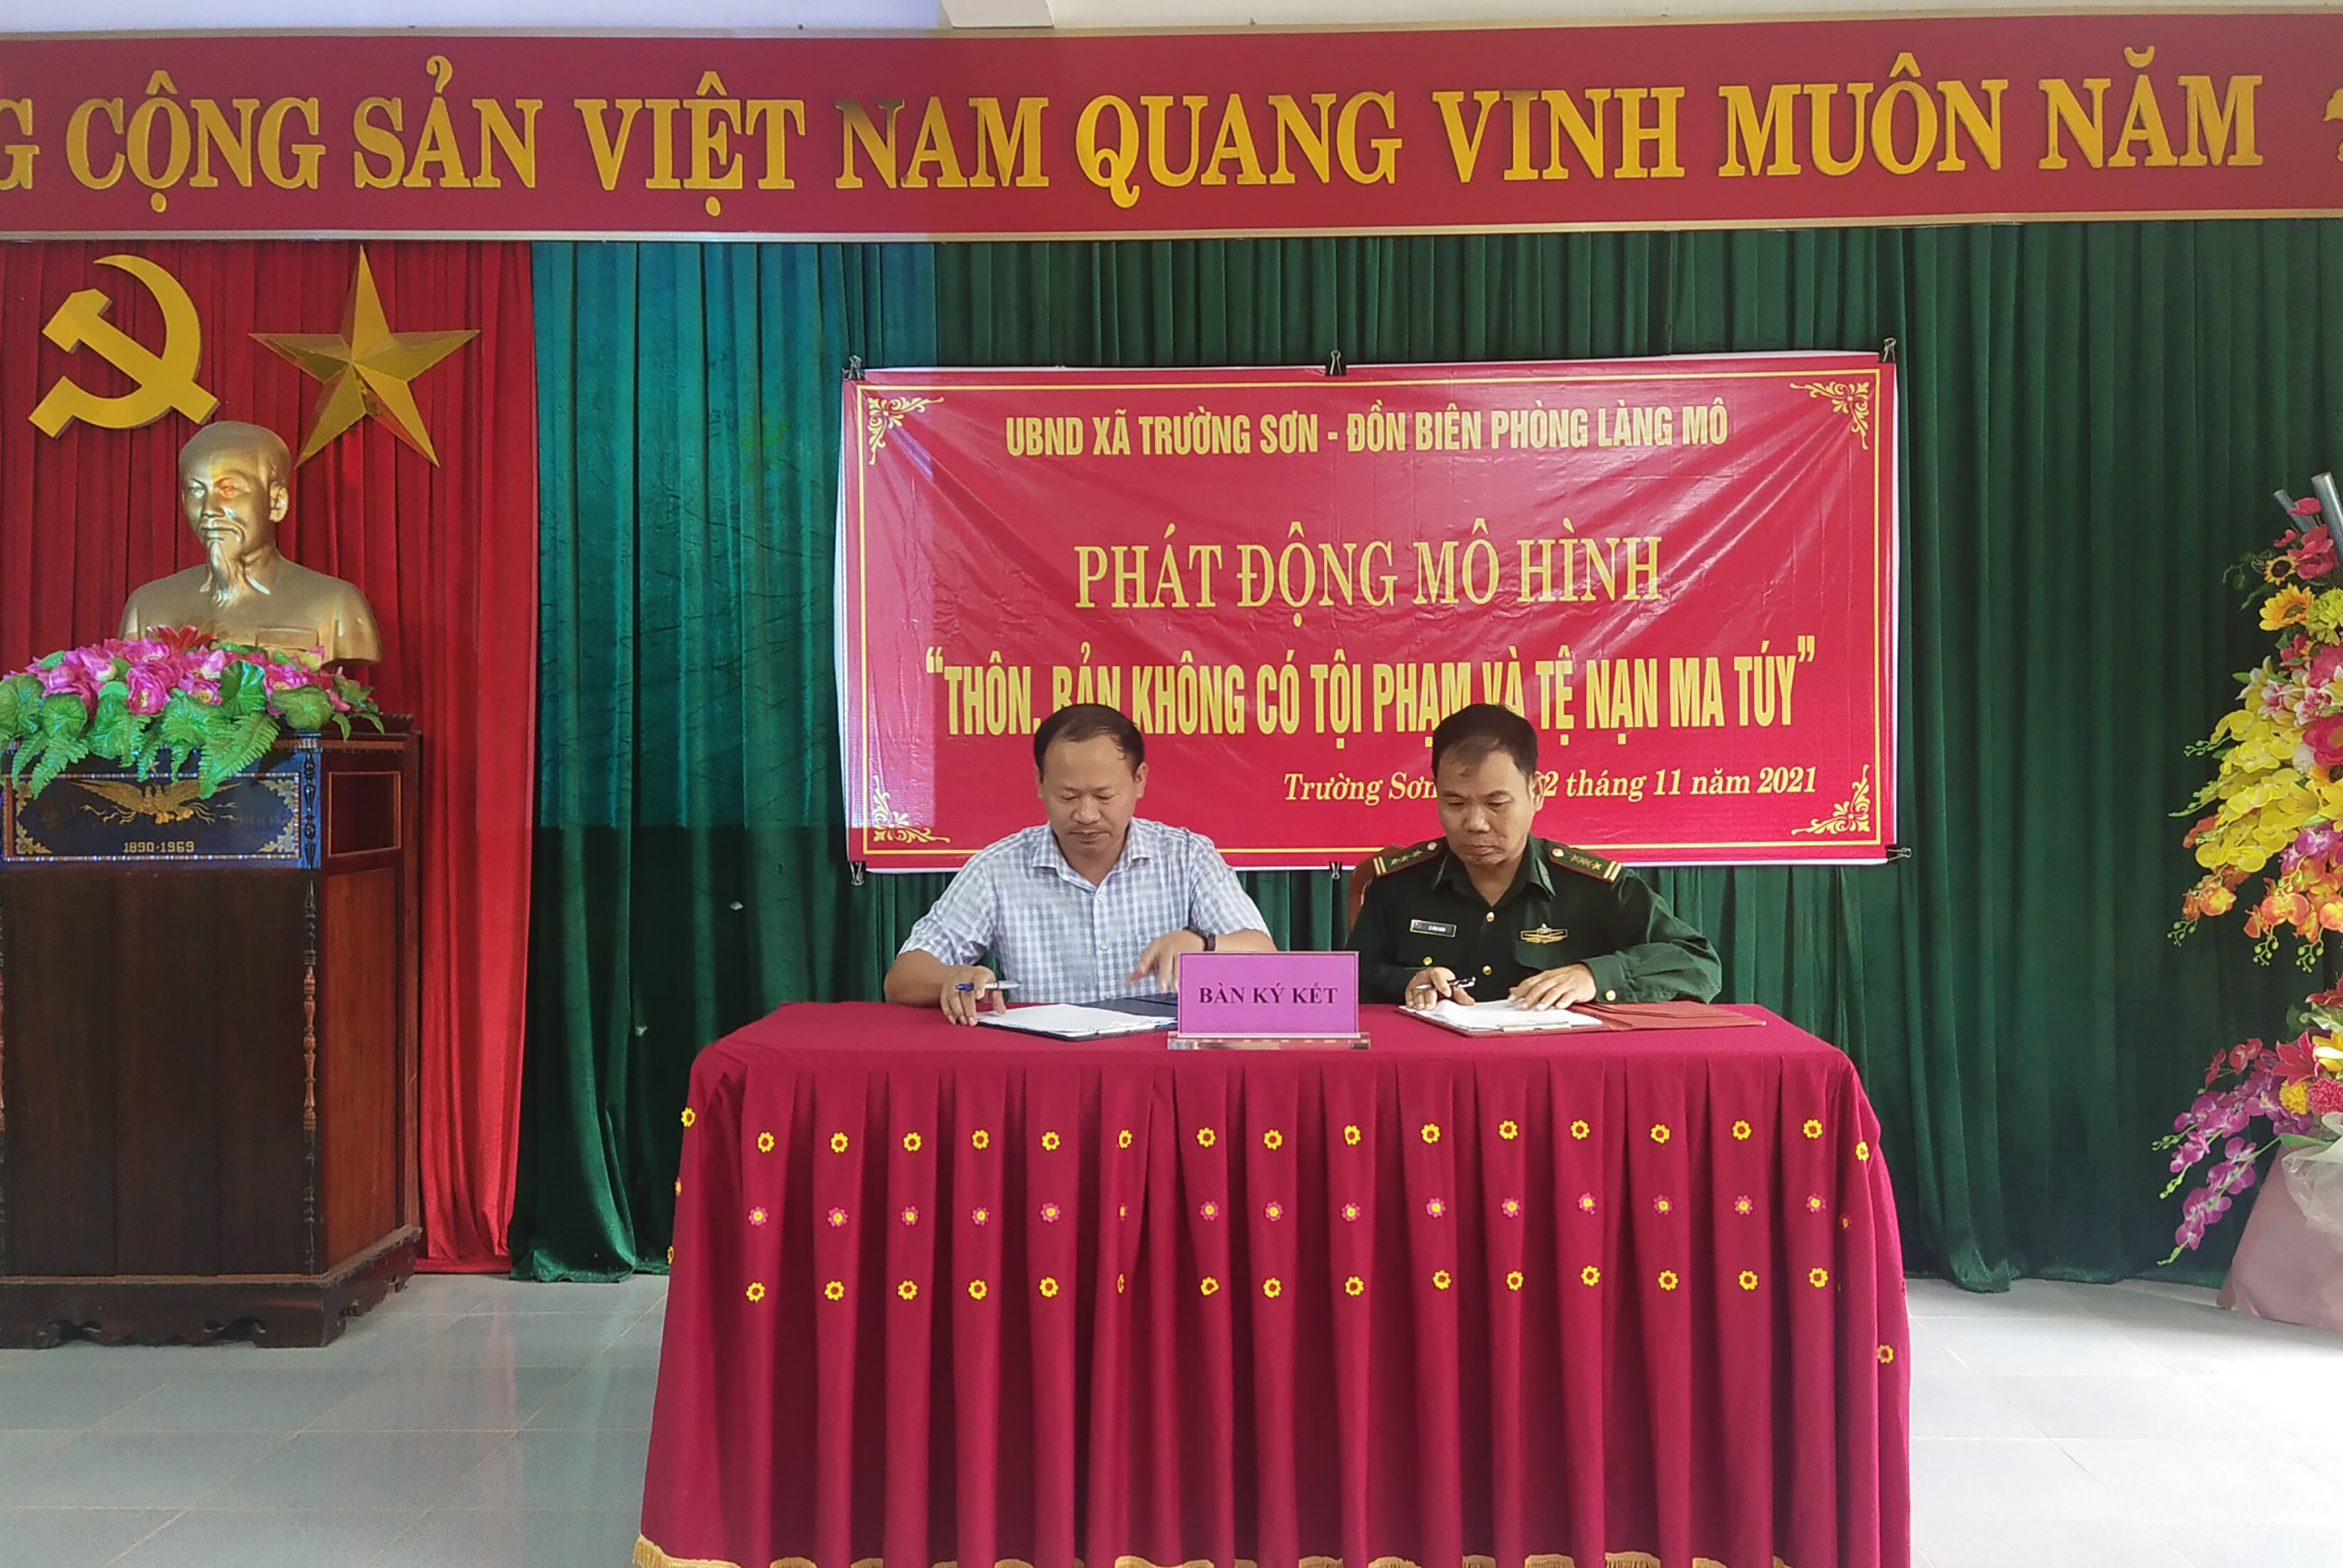 Đại diện Đồn biên Phòng Làng Mô cùng với lãnh đạo xã Trường Sơn, huyện Quảng Ninh ký kết phát động mô hình.